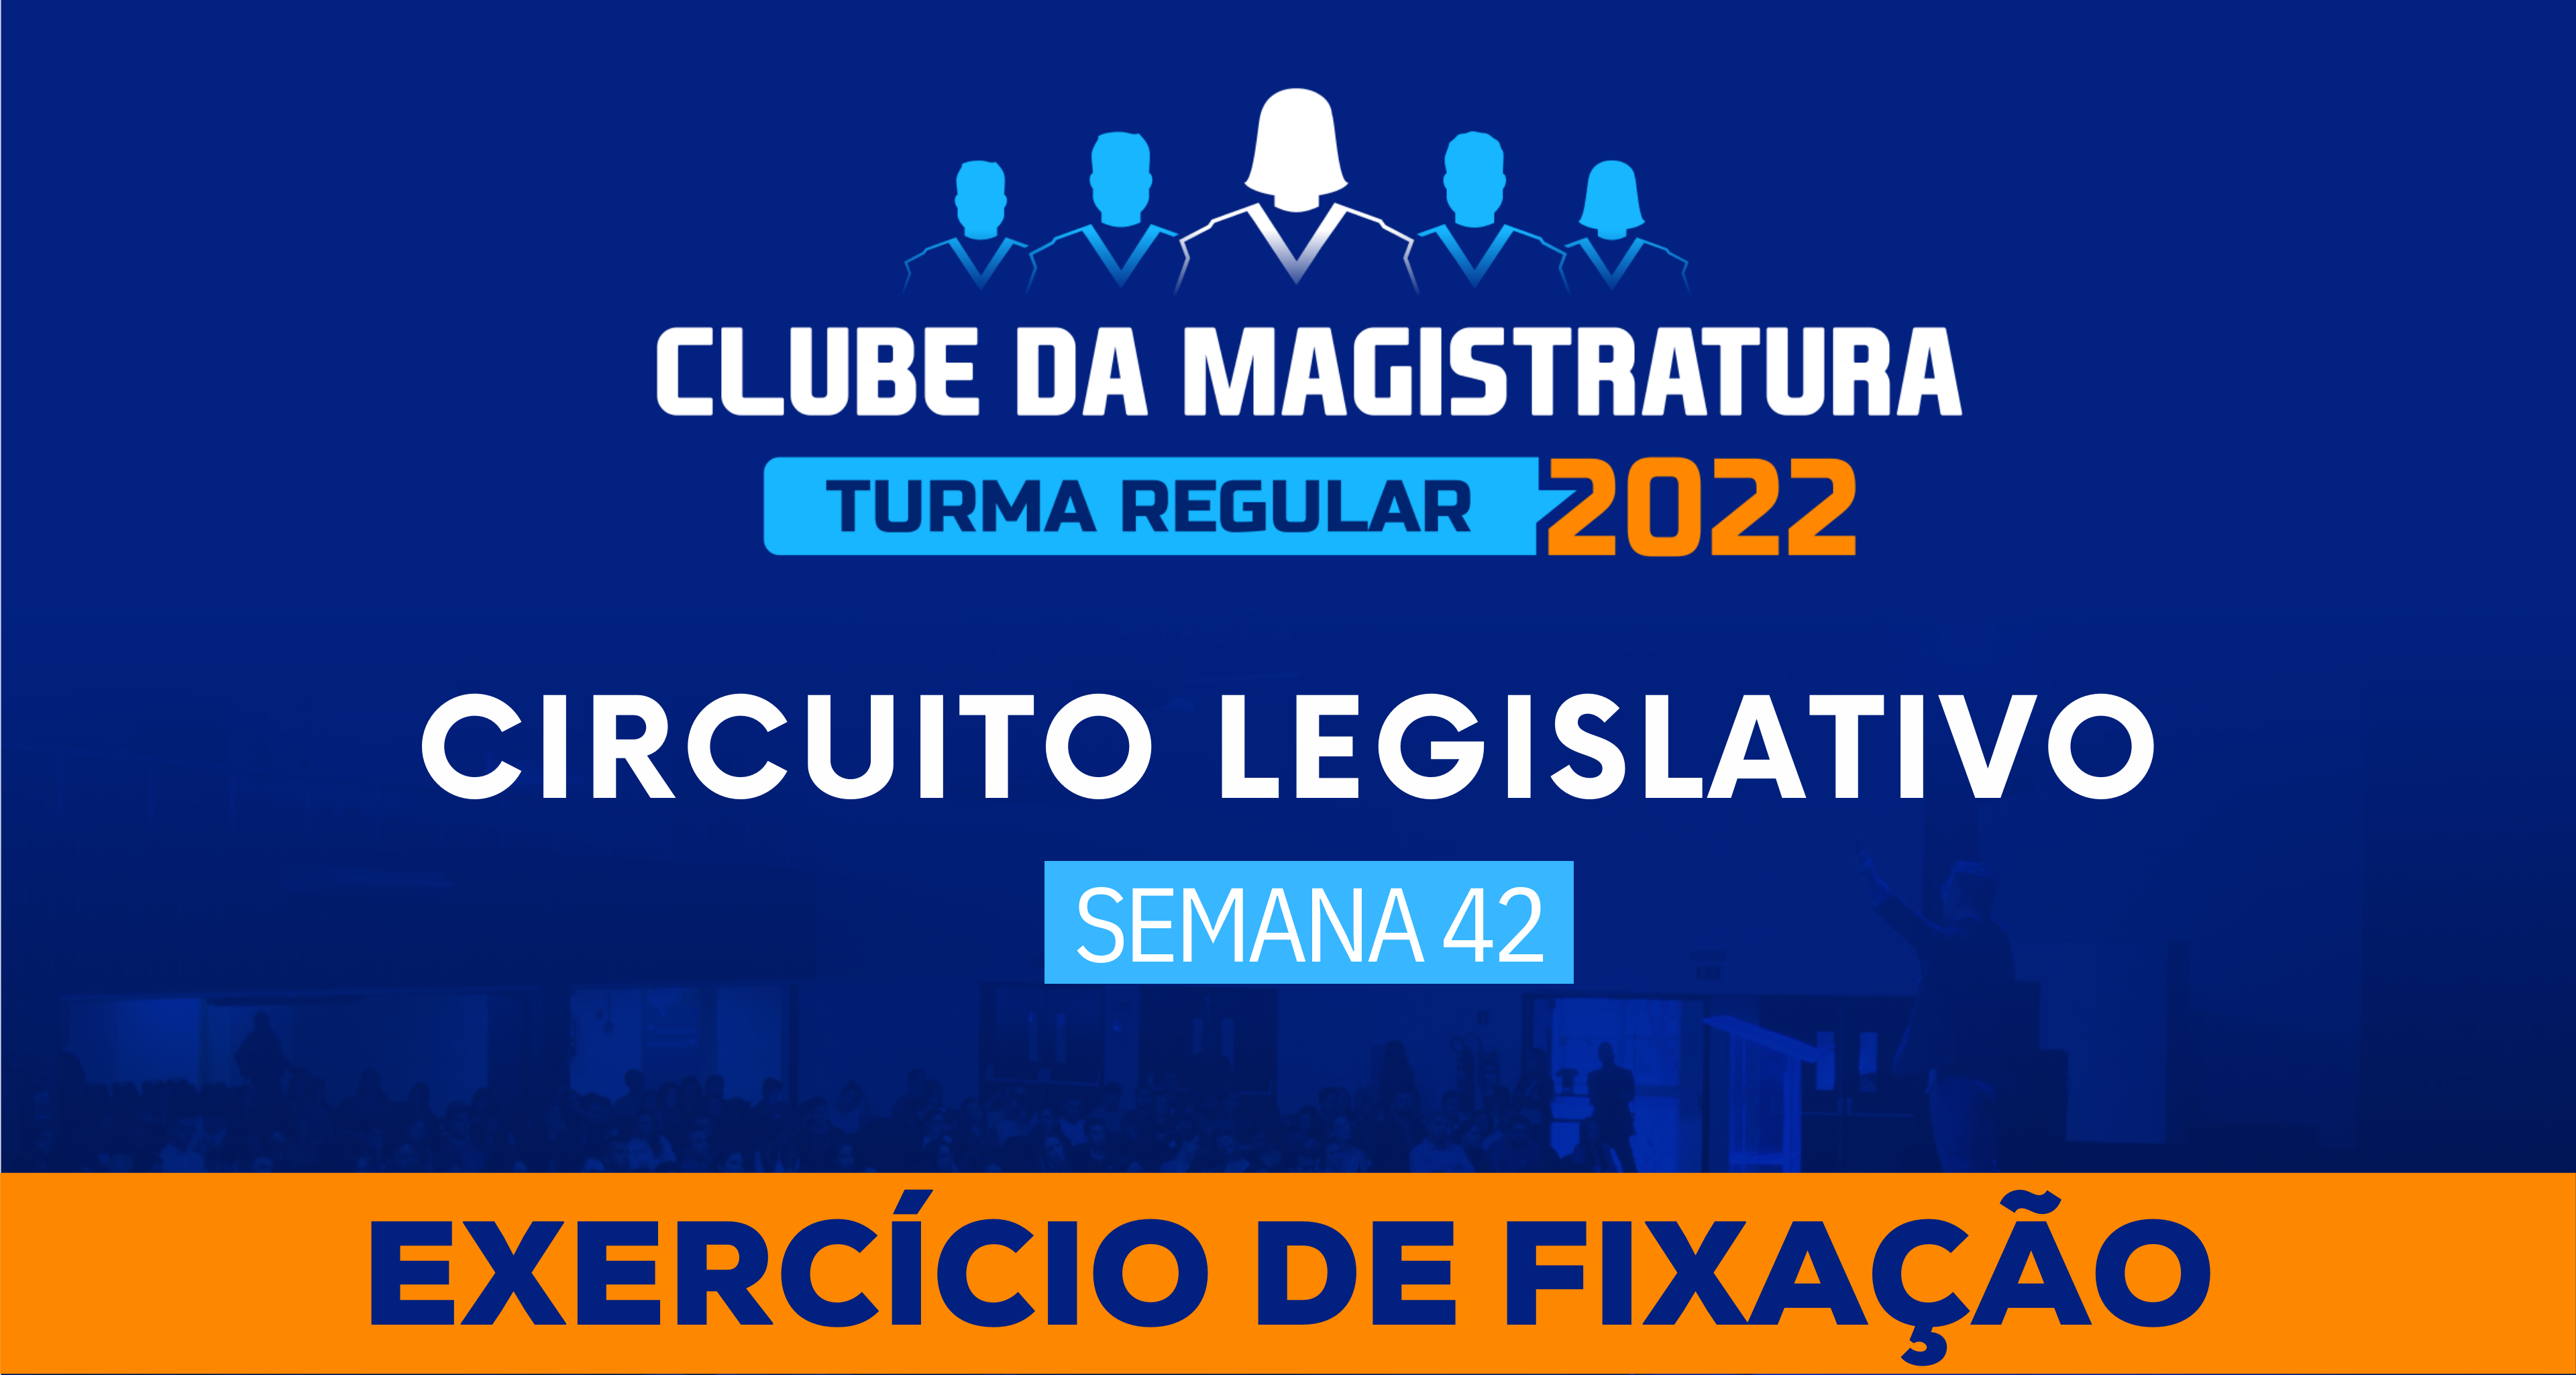 Circuito Legislativo 2022.1 (Clube da Magistratura - Semana 42)